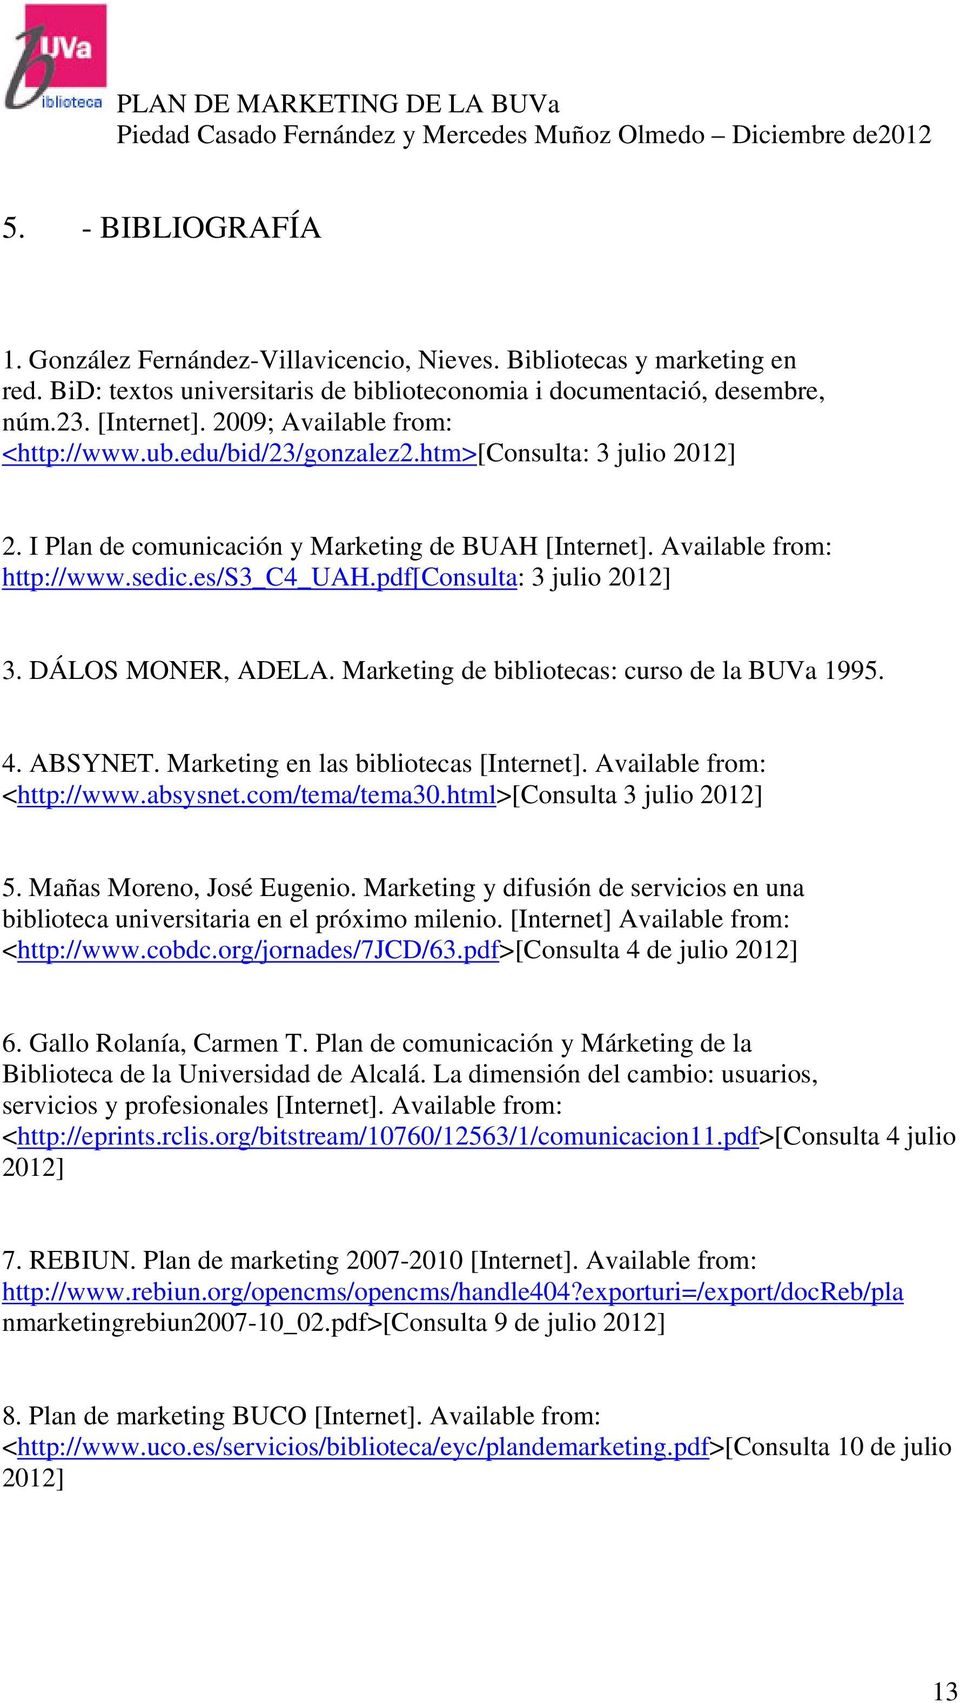 pdf[consulta: 3 julio 2012] 3. DÁLOS MONER, ADELA. Marketing de bibliotecas: curso de la BUVa 1995. 4. ABSYNET. Marketing en las bibliotecas [Internet]. Available from: <http://www.absysnet.